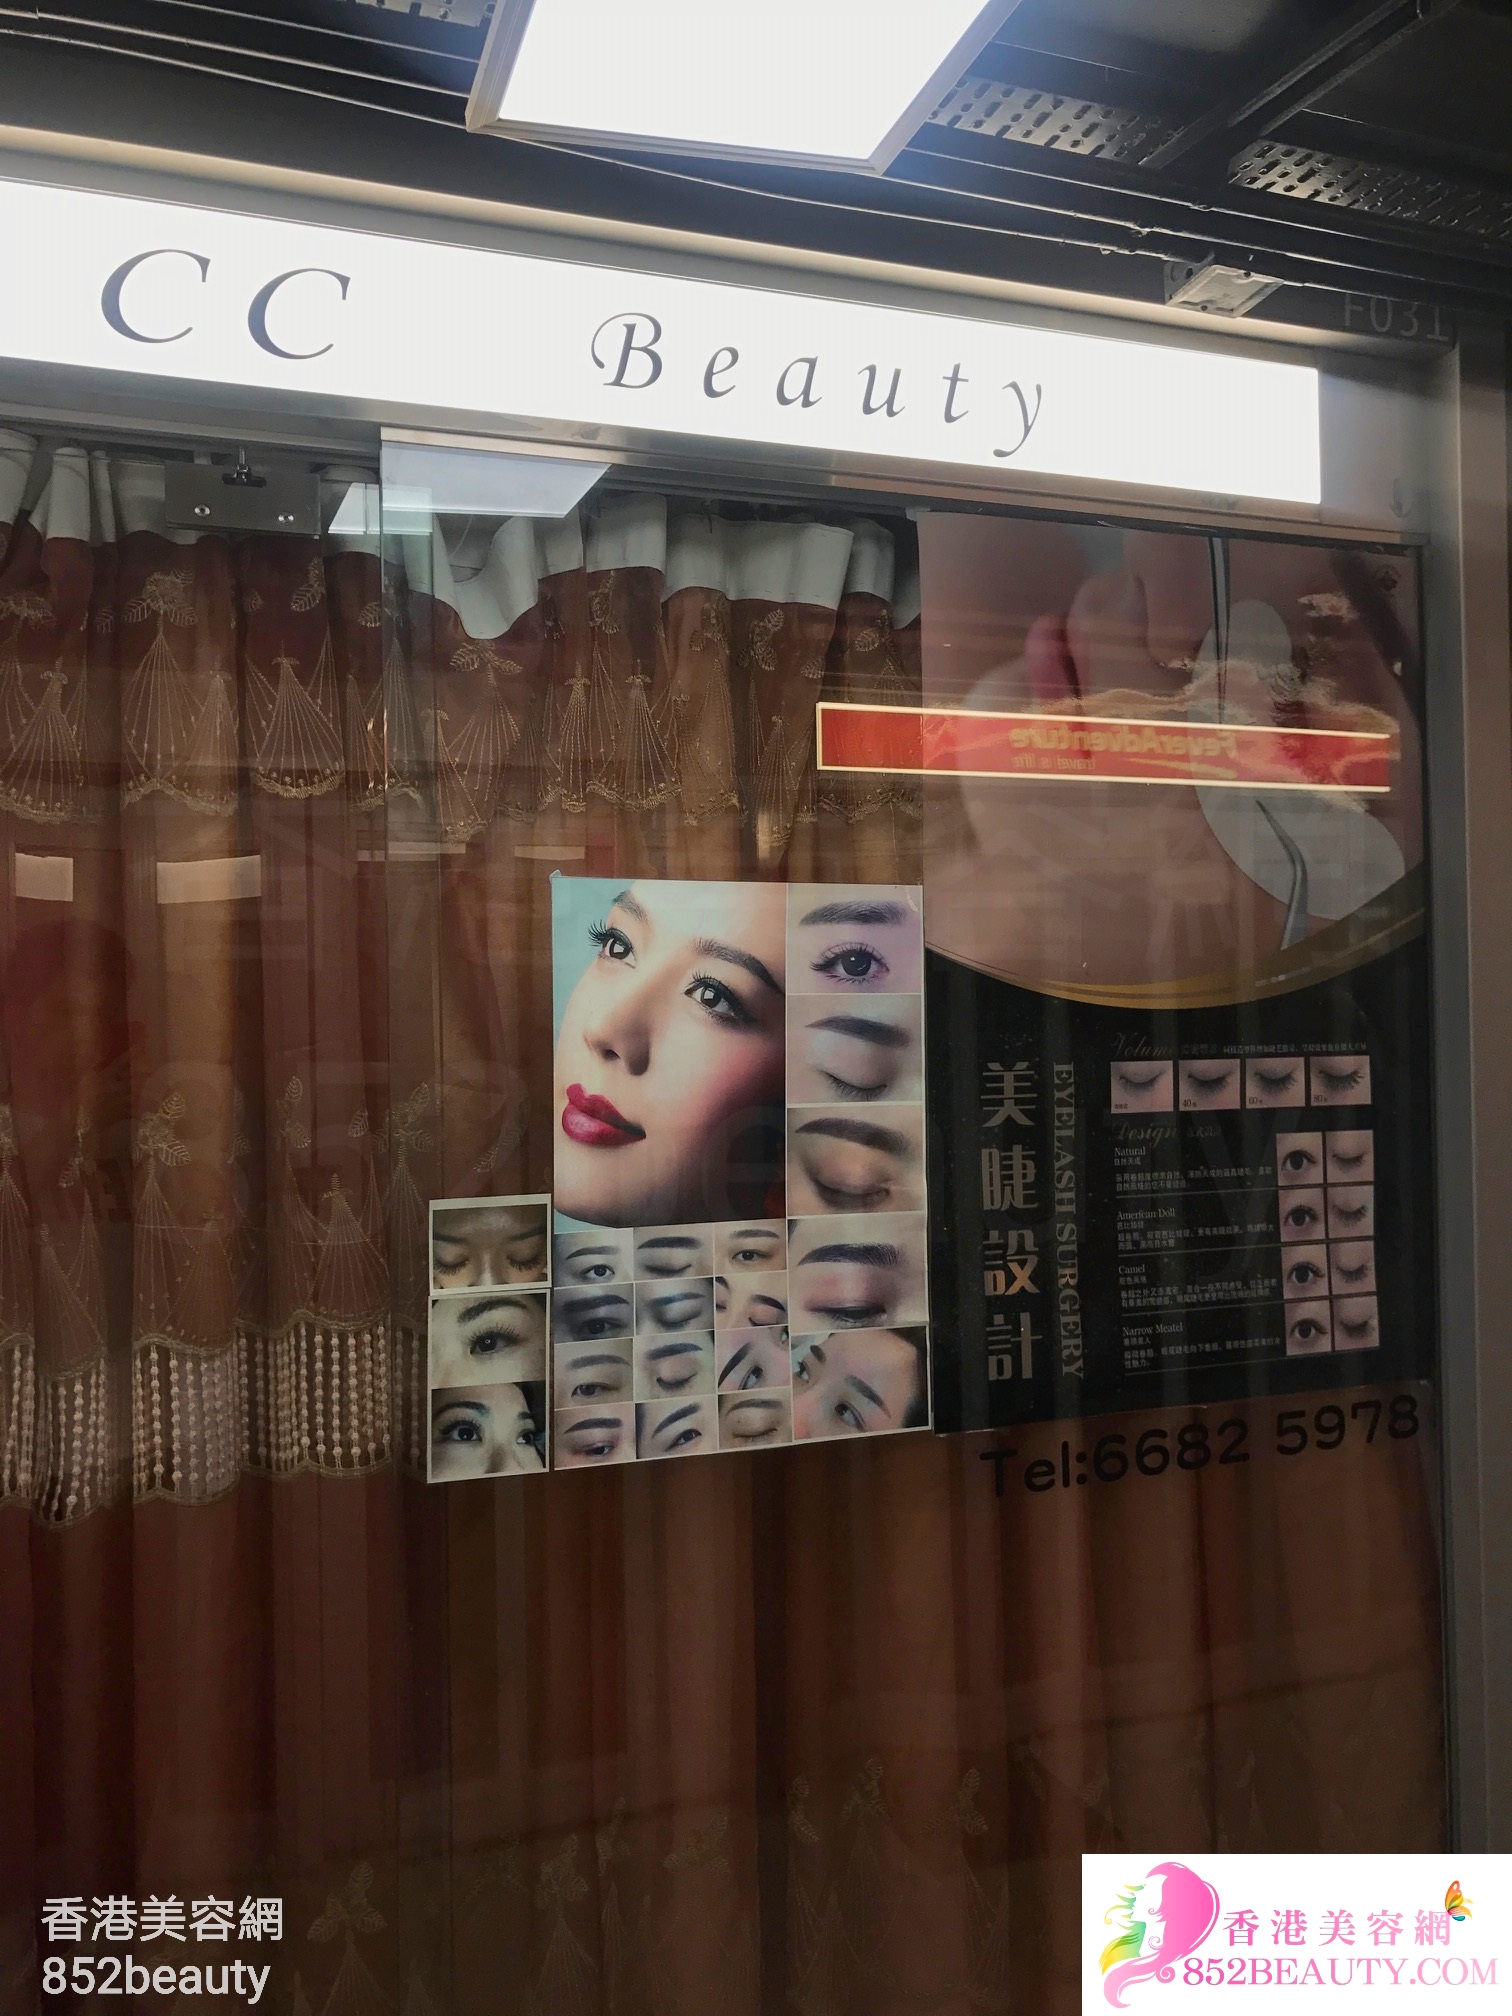 美容院 Beauty Salon: CC Beauty